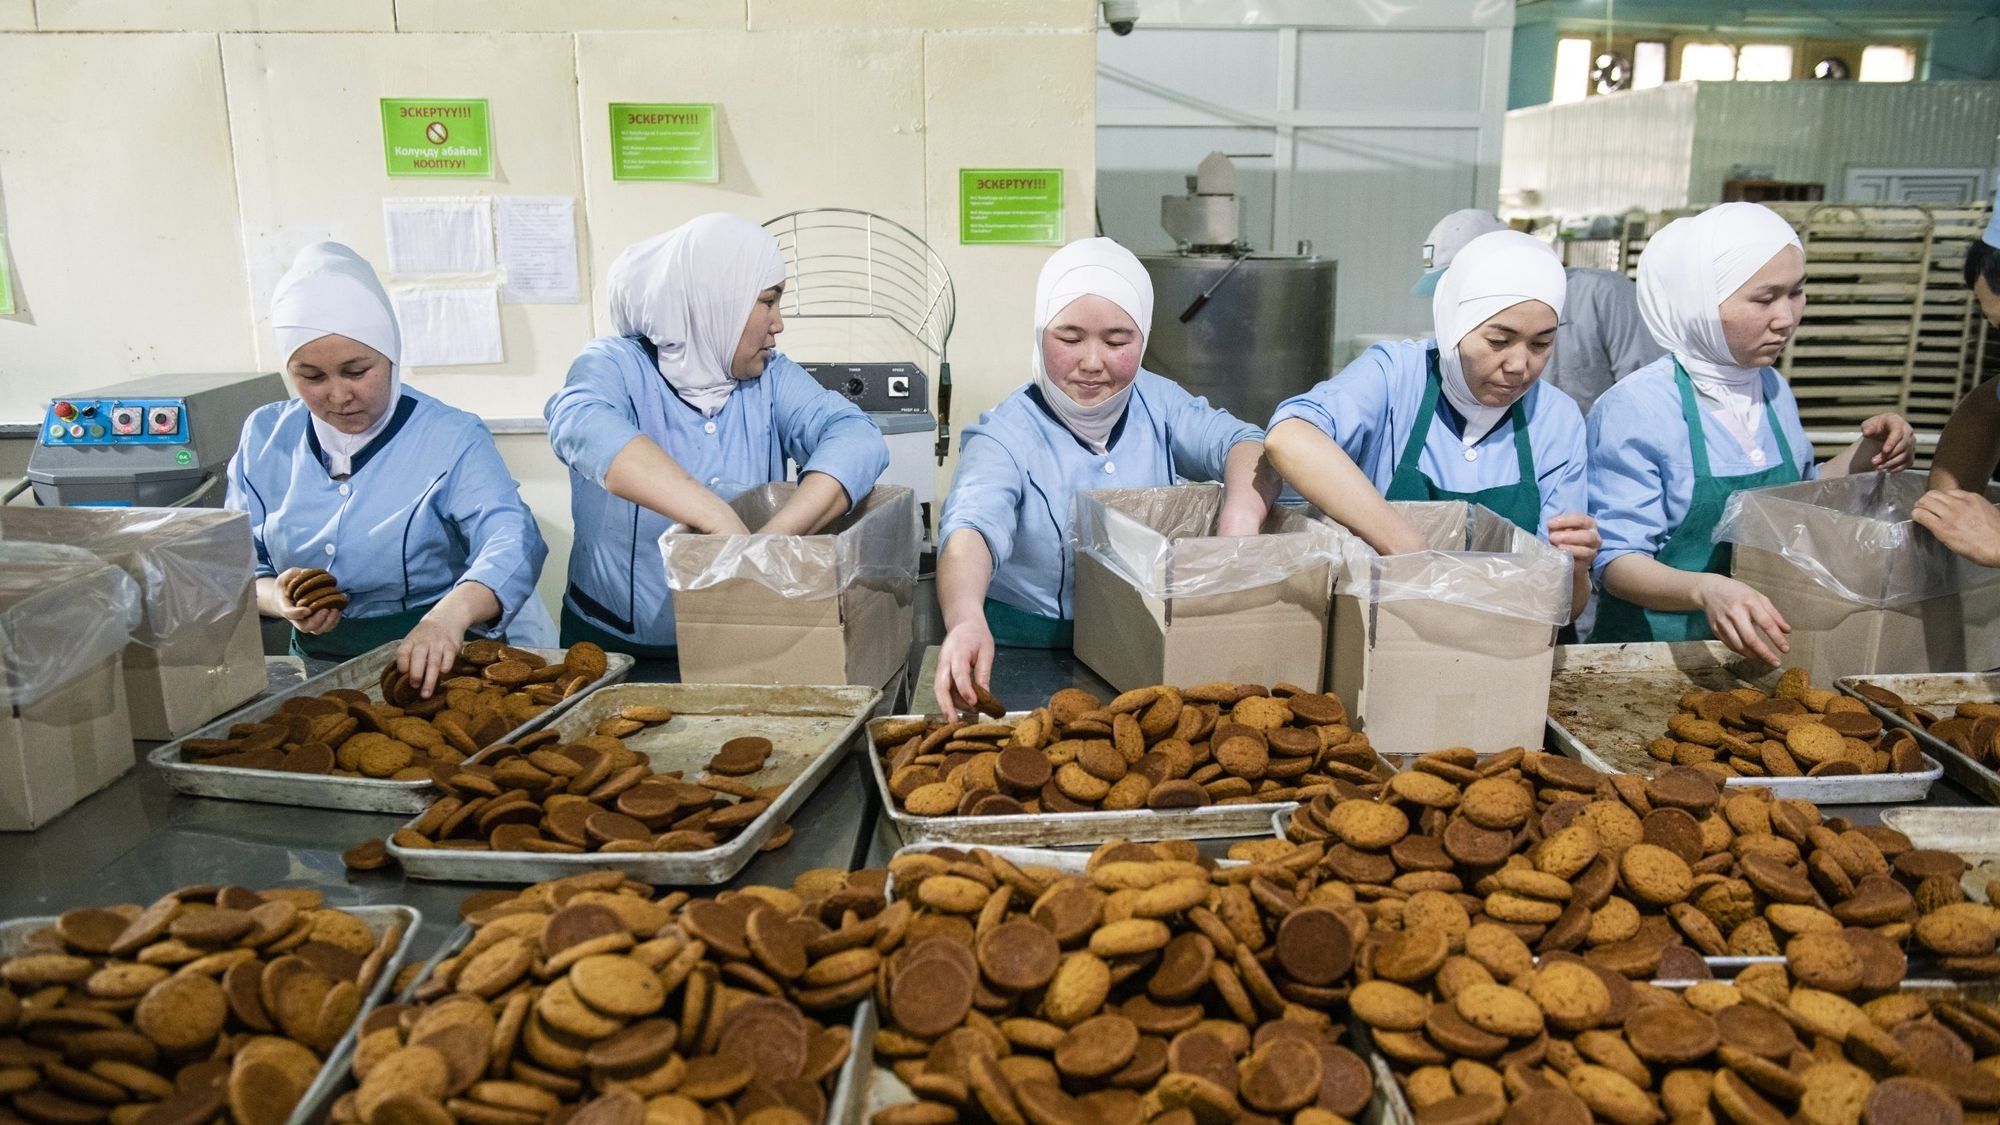 Безработица в Кыргызстане чуть ниже здорового уровня - сравнение с другими странами ЕАЭС